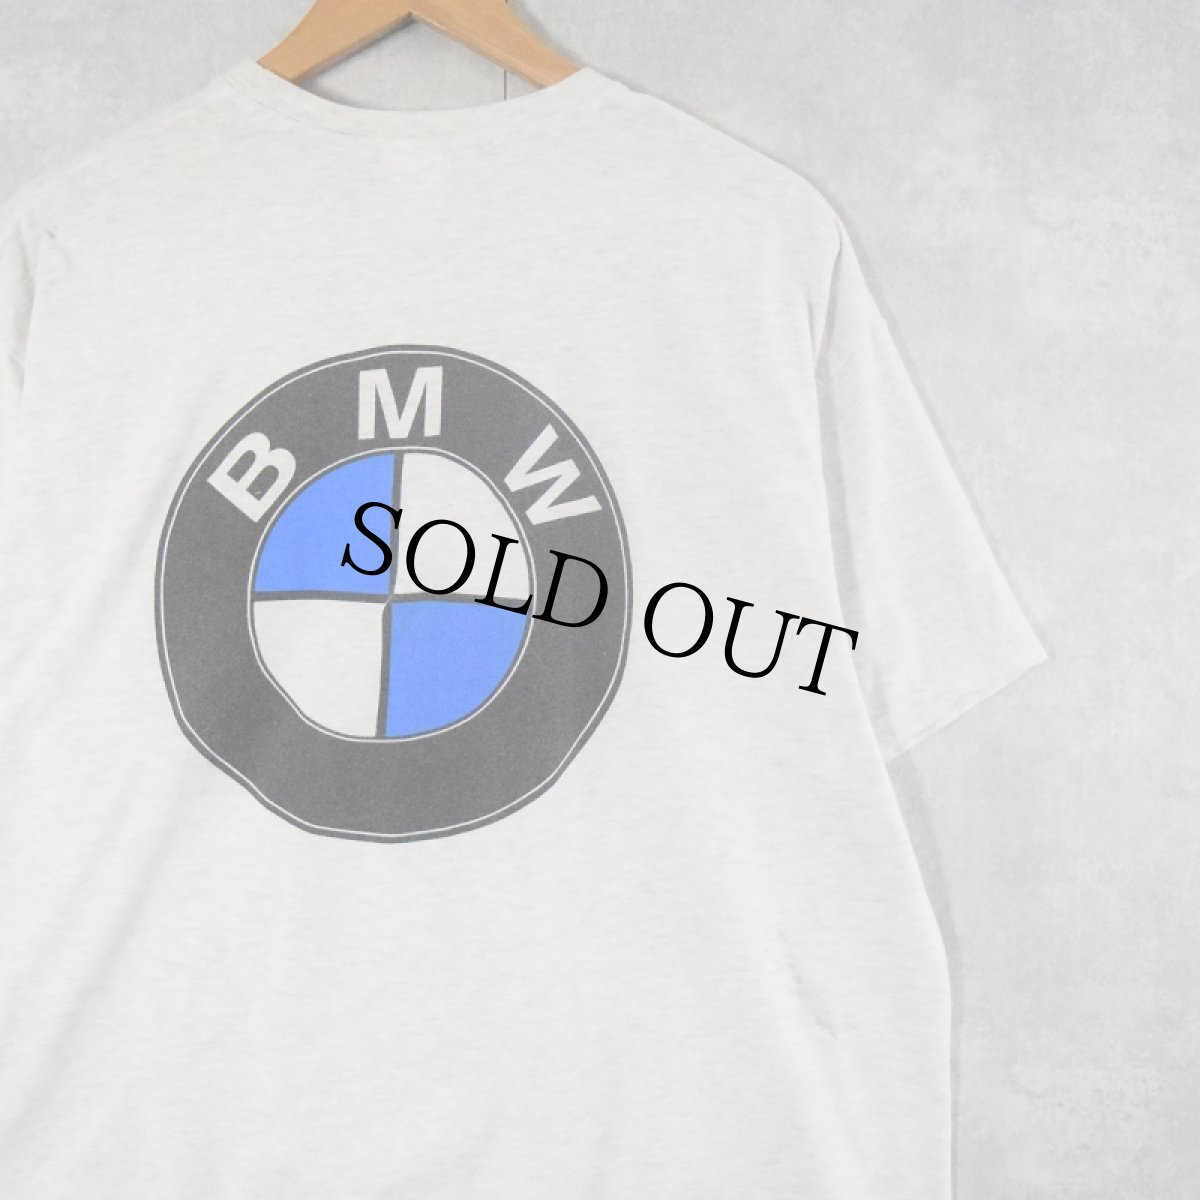 画像1: BMW 自動車メーカー ロゴプリントTシャツ (1)